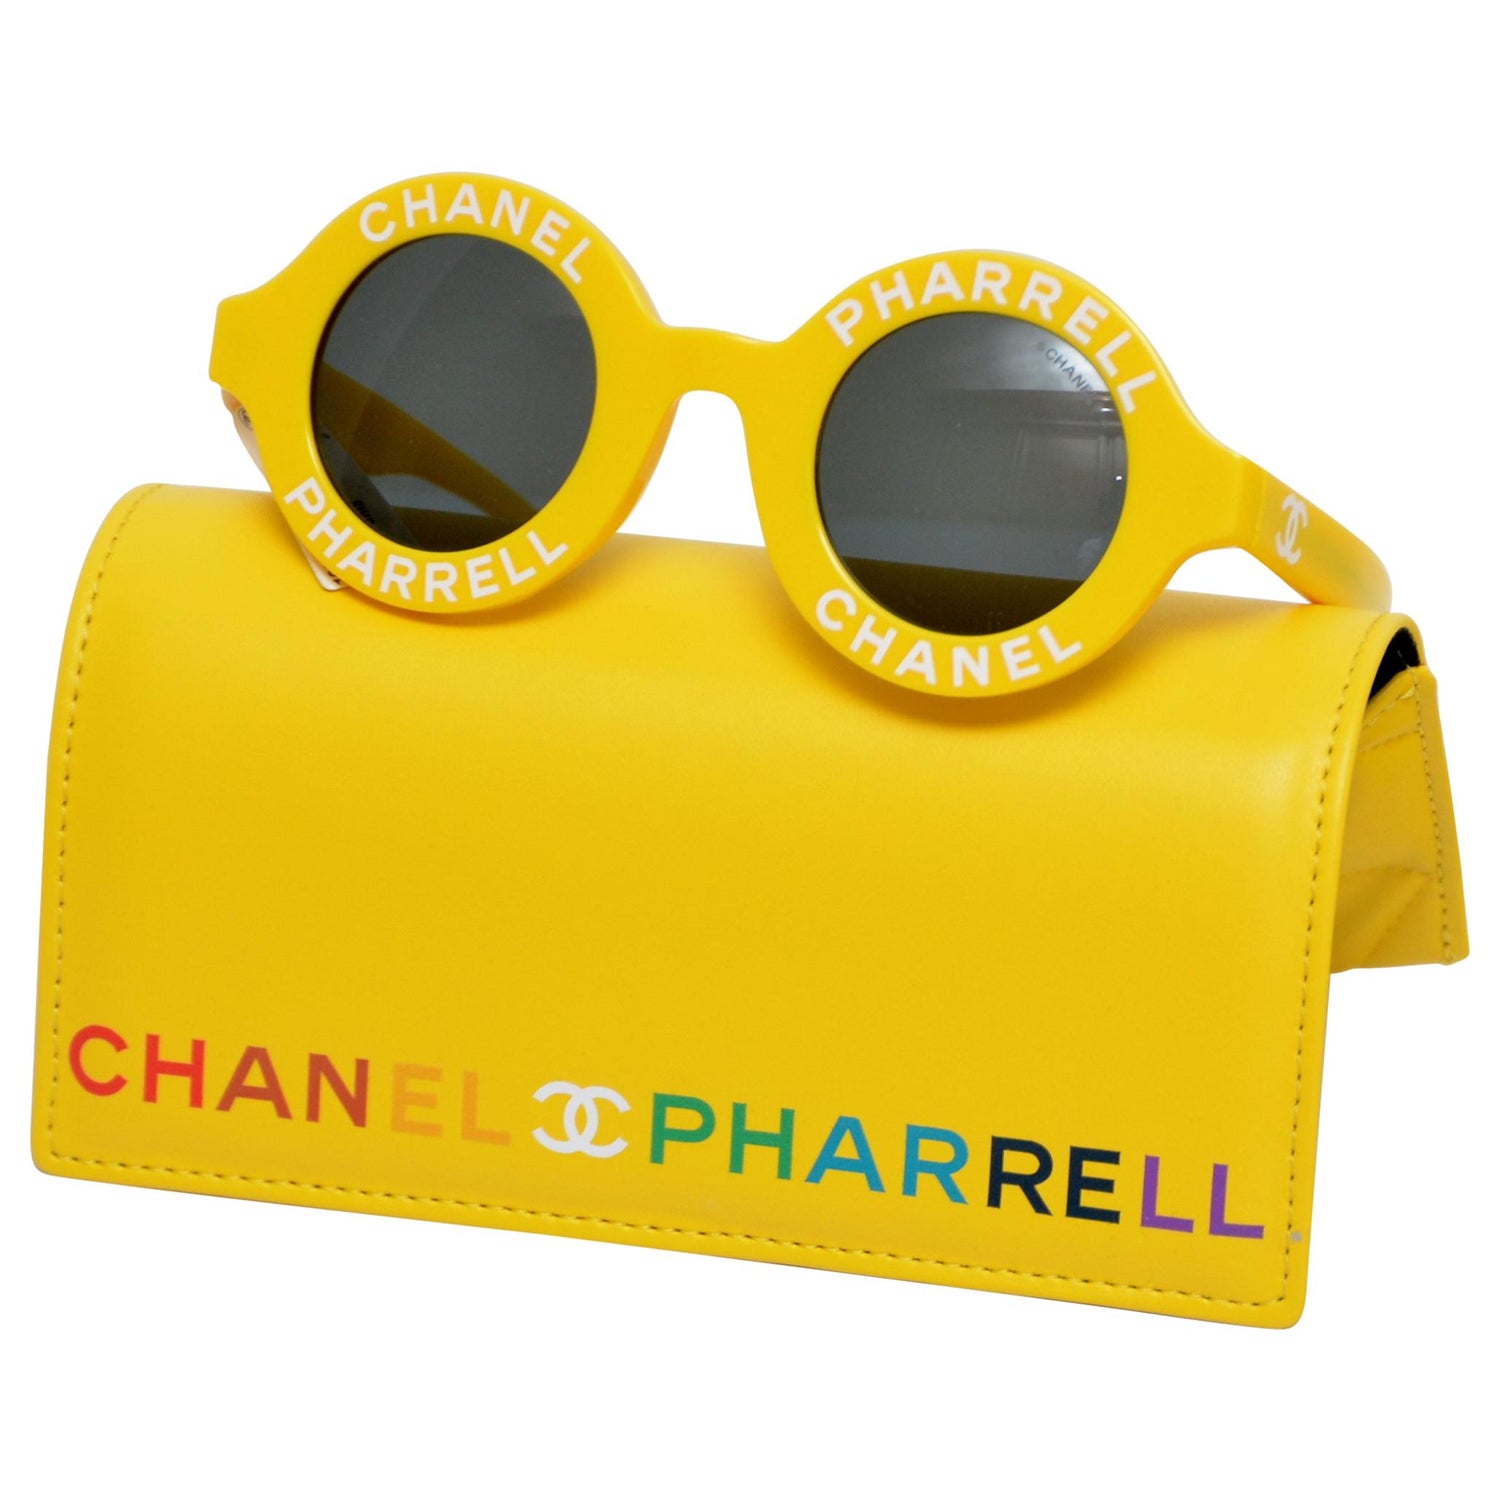 Chanel Pharrell Sunglasses - For Sale on 1stDibs | chanel pharrell glasses, chanel  sunglasses pharrell, pharrell glasses